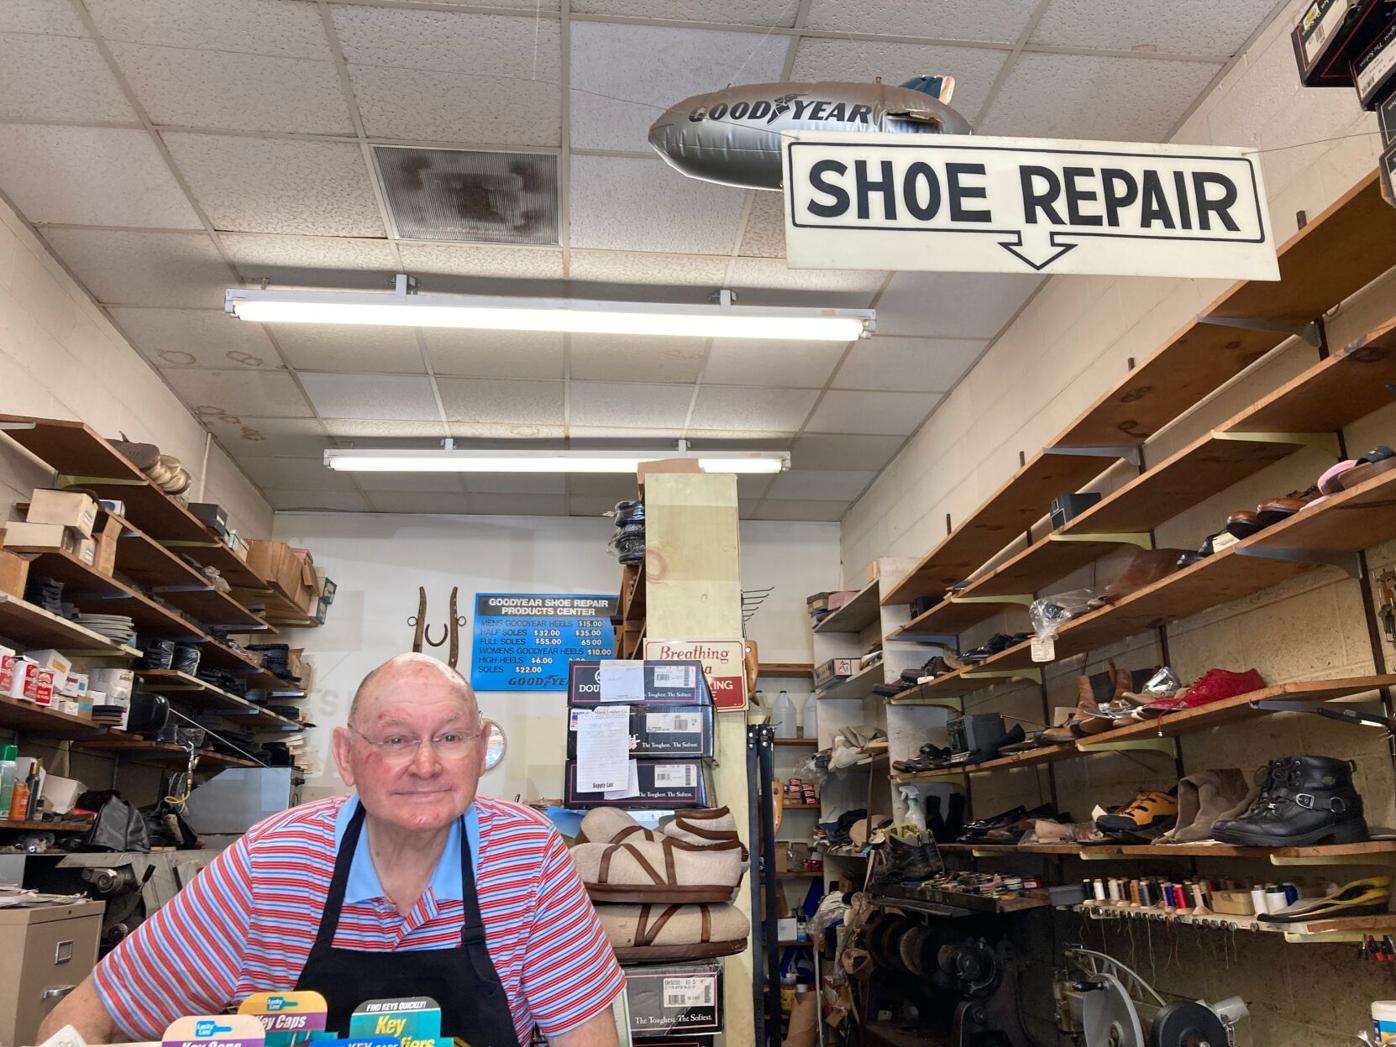 Lots of change in shoe repair biz